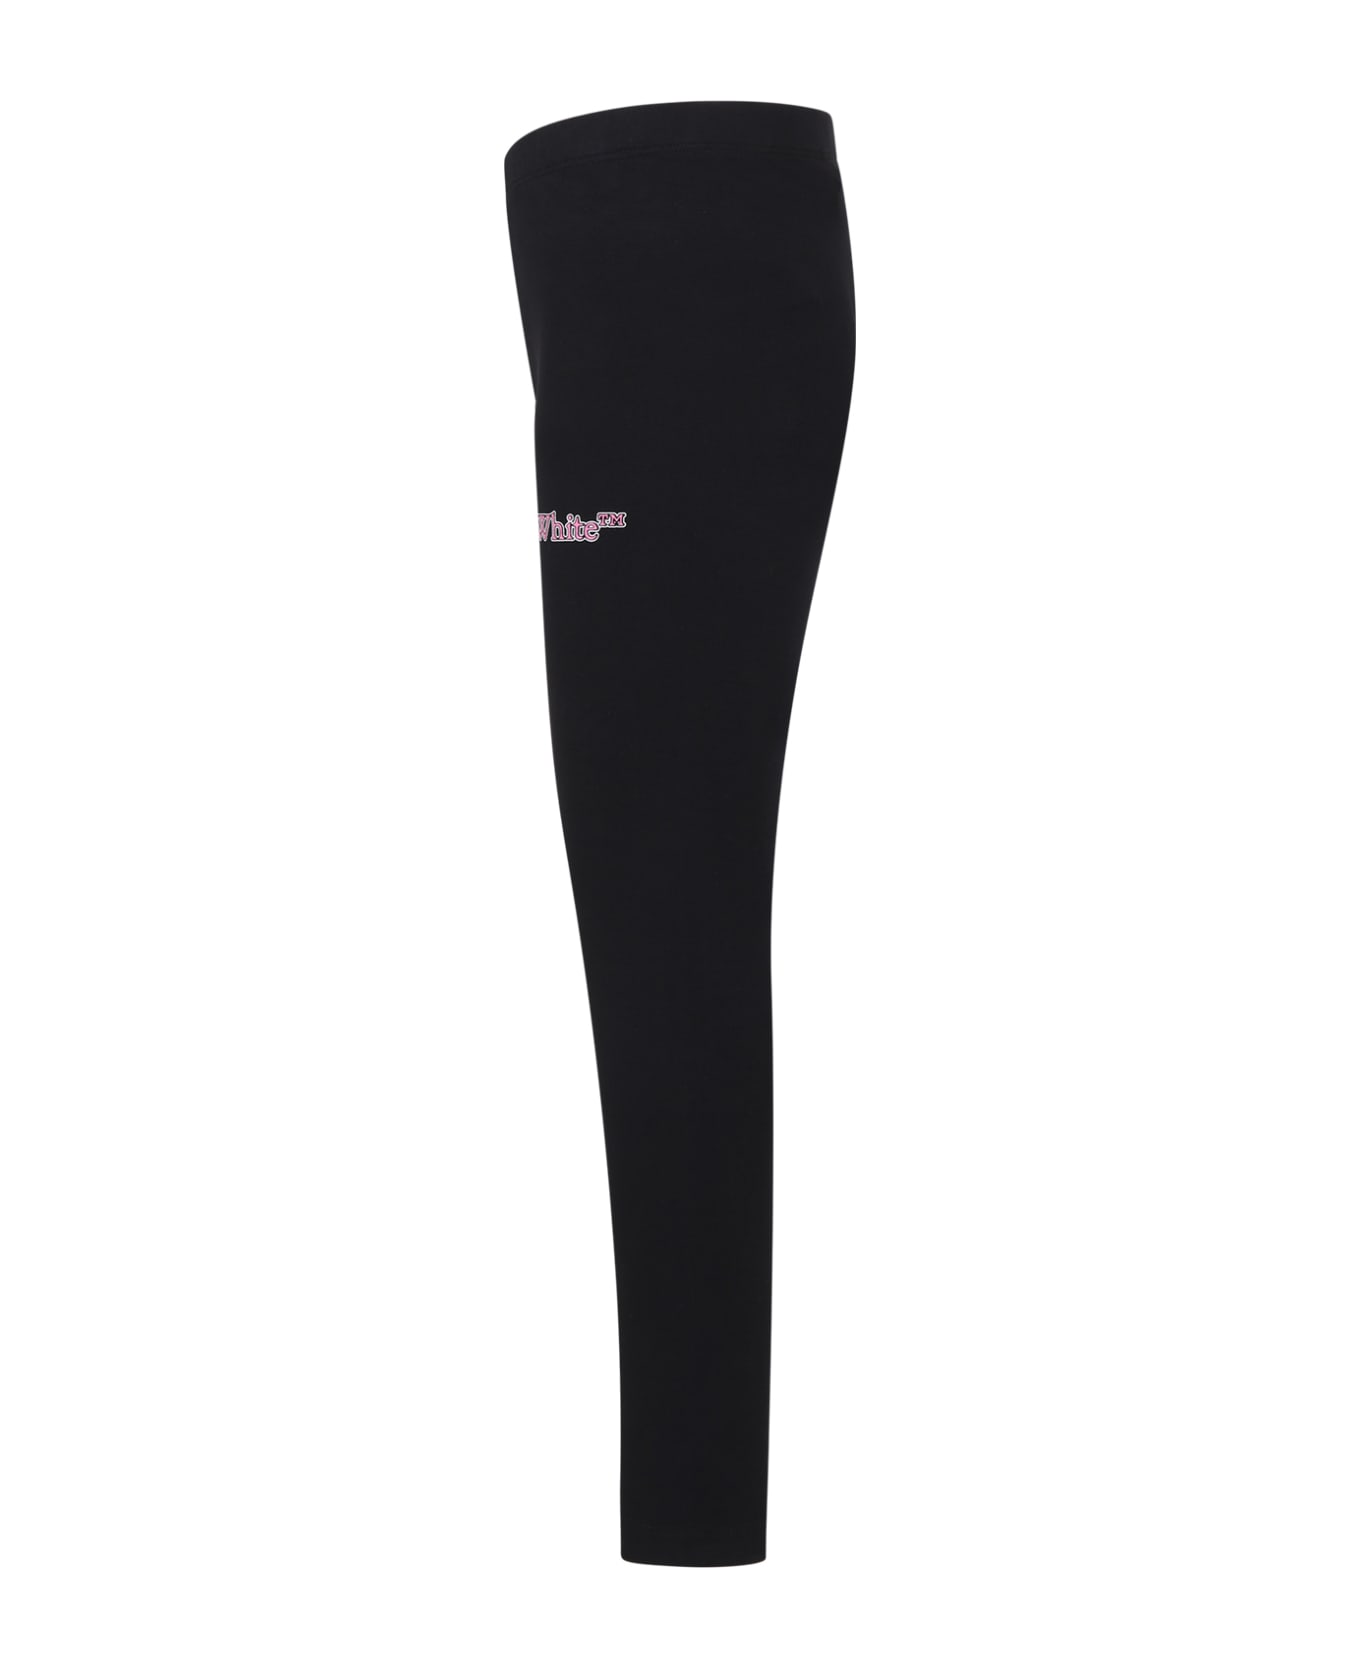 Off-White Black Leggings For Girl With Logo - Black ボトムス